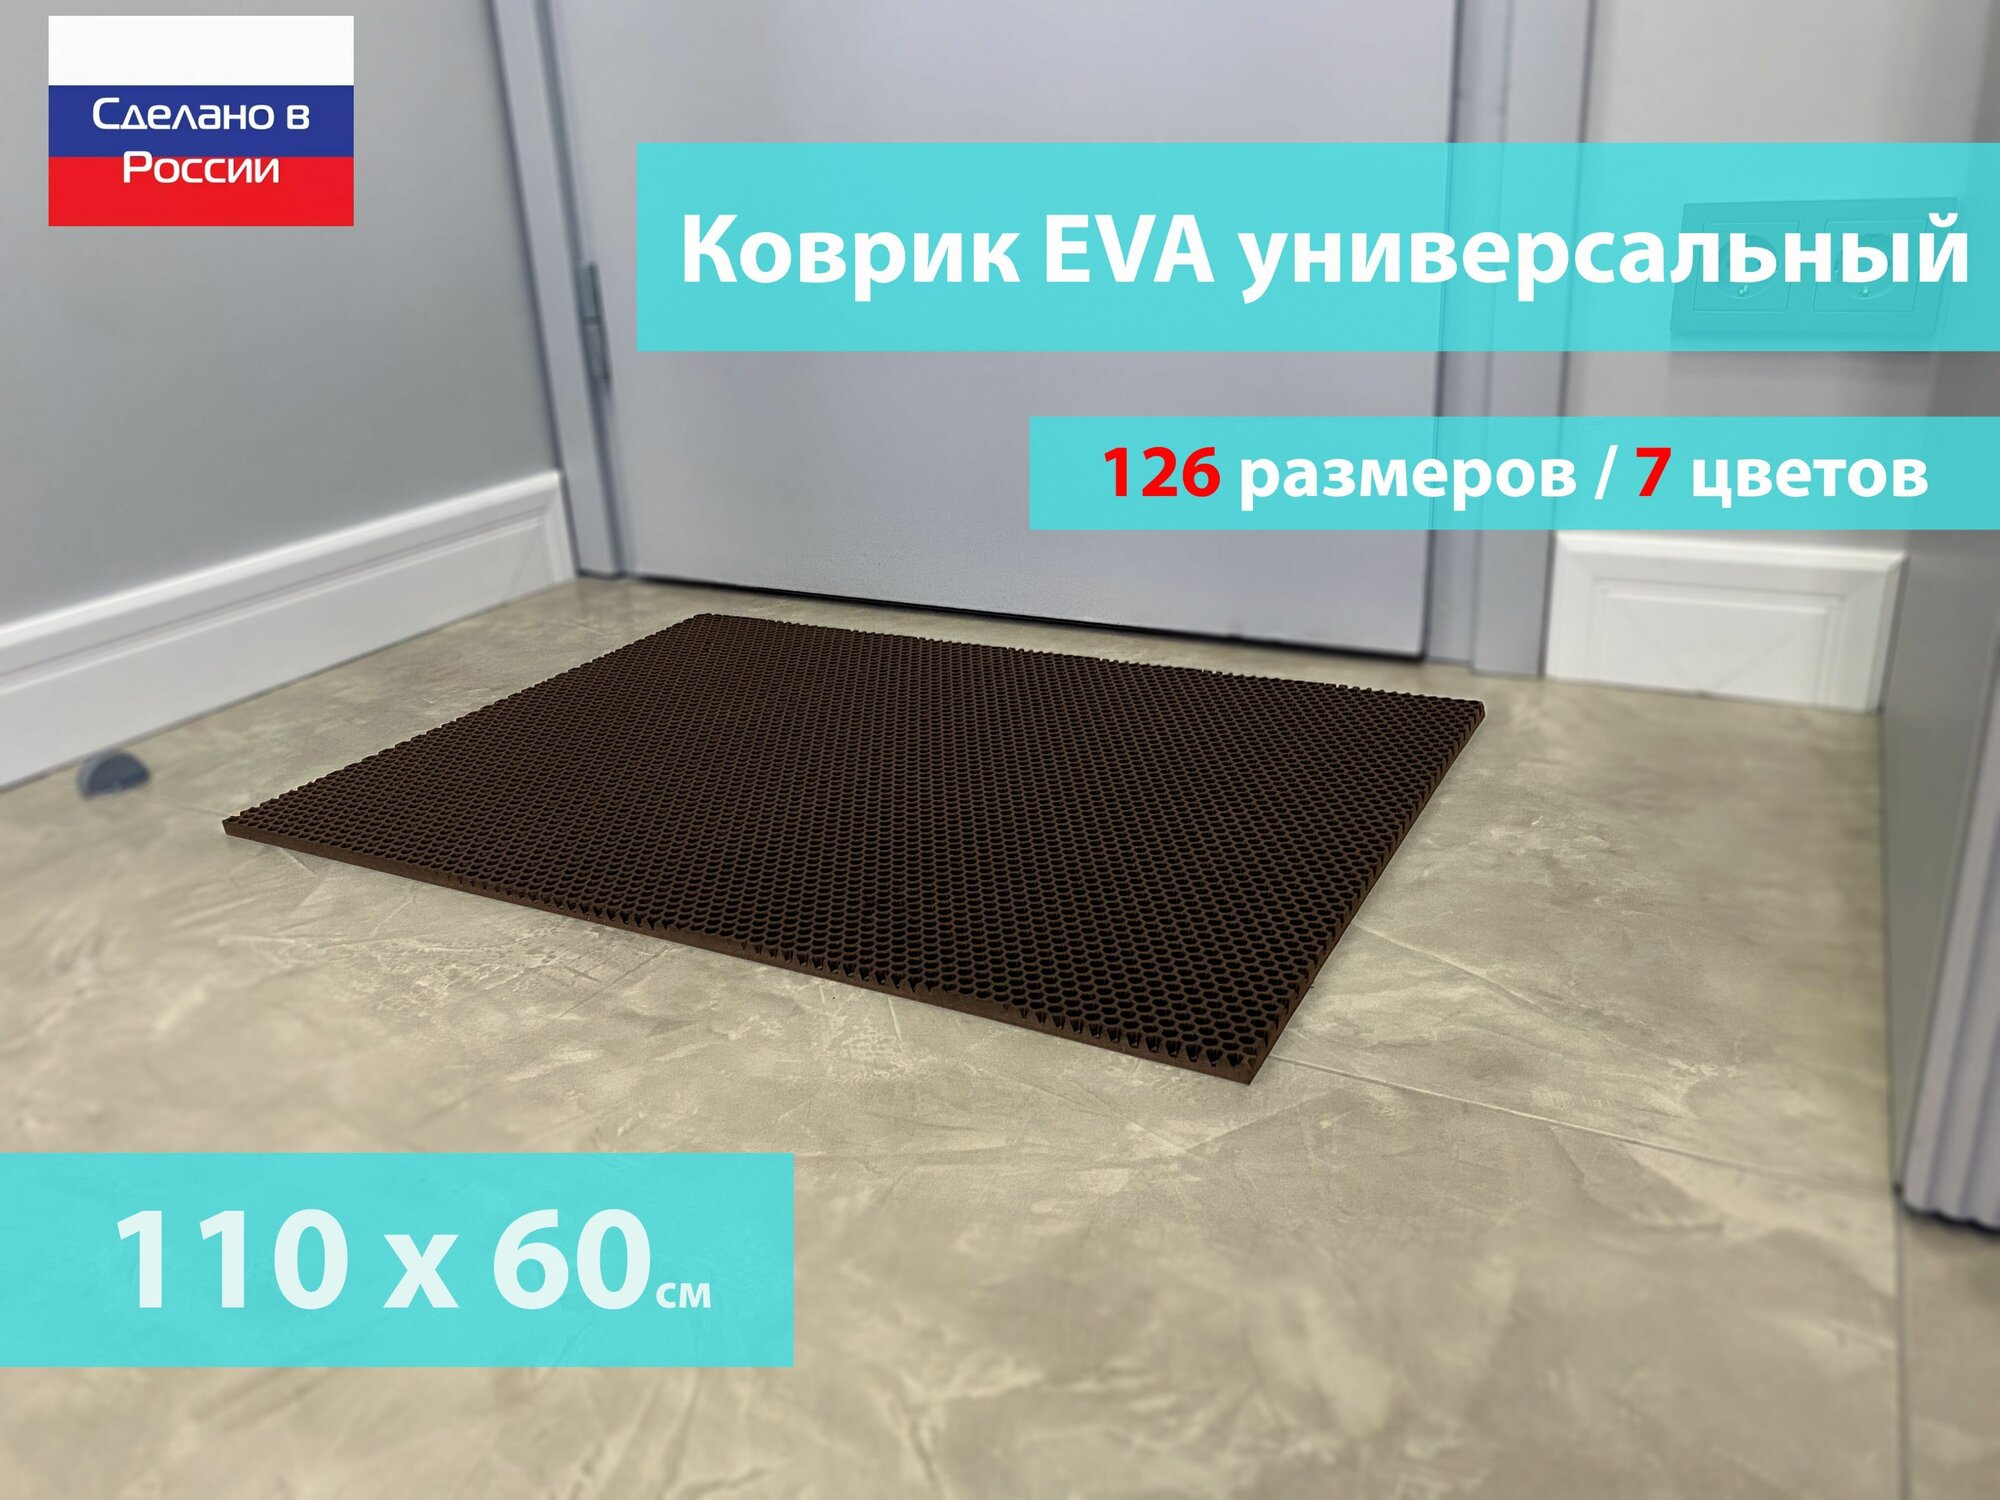 Коврик придверный EVA (ЕВА) в прихожую для обуви / Ковер ЭВА на пол перед дверью/ коричневый / размер 110 х 60 см